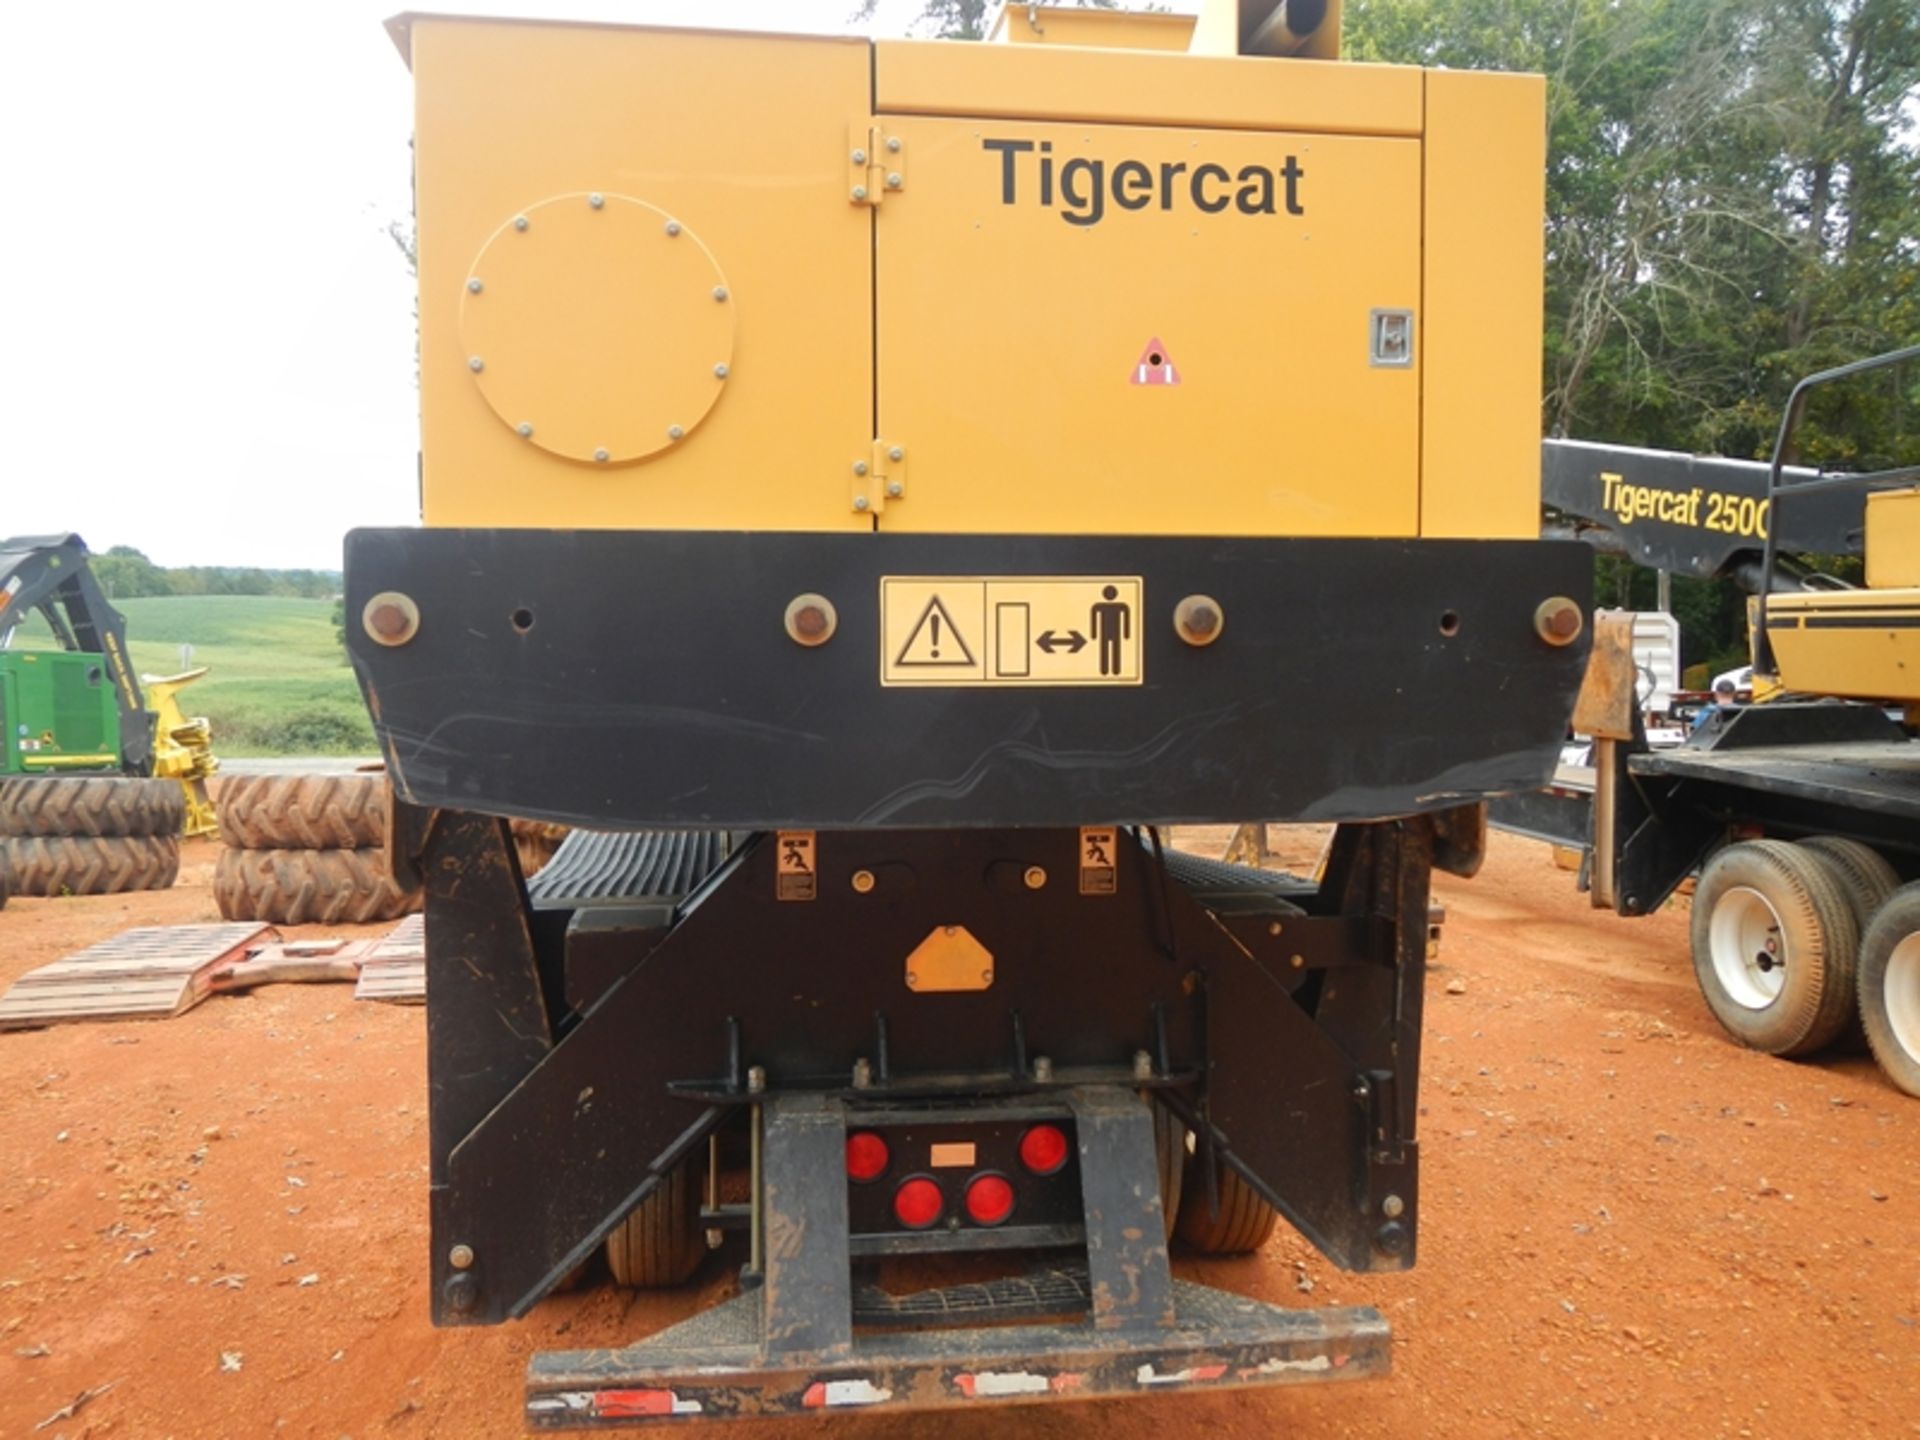 2018 Tiger Cat  250D loader vin# 2503083 5358 hrs w/CSI 264 Ultra delimber, & buck saw platform - Image 13 of 22